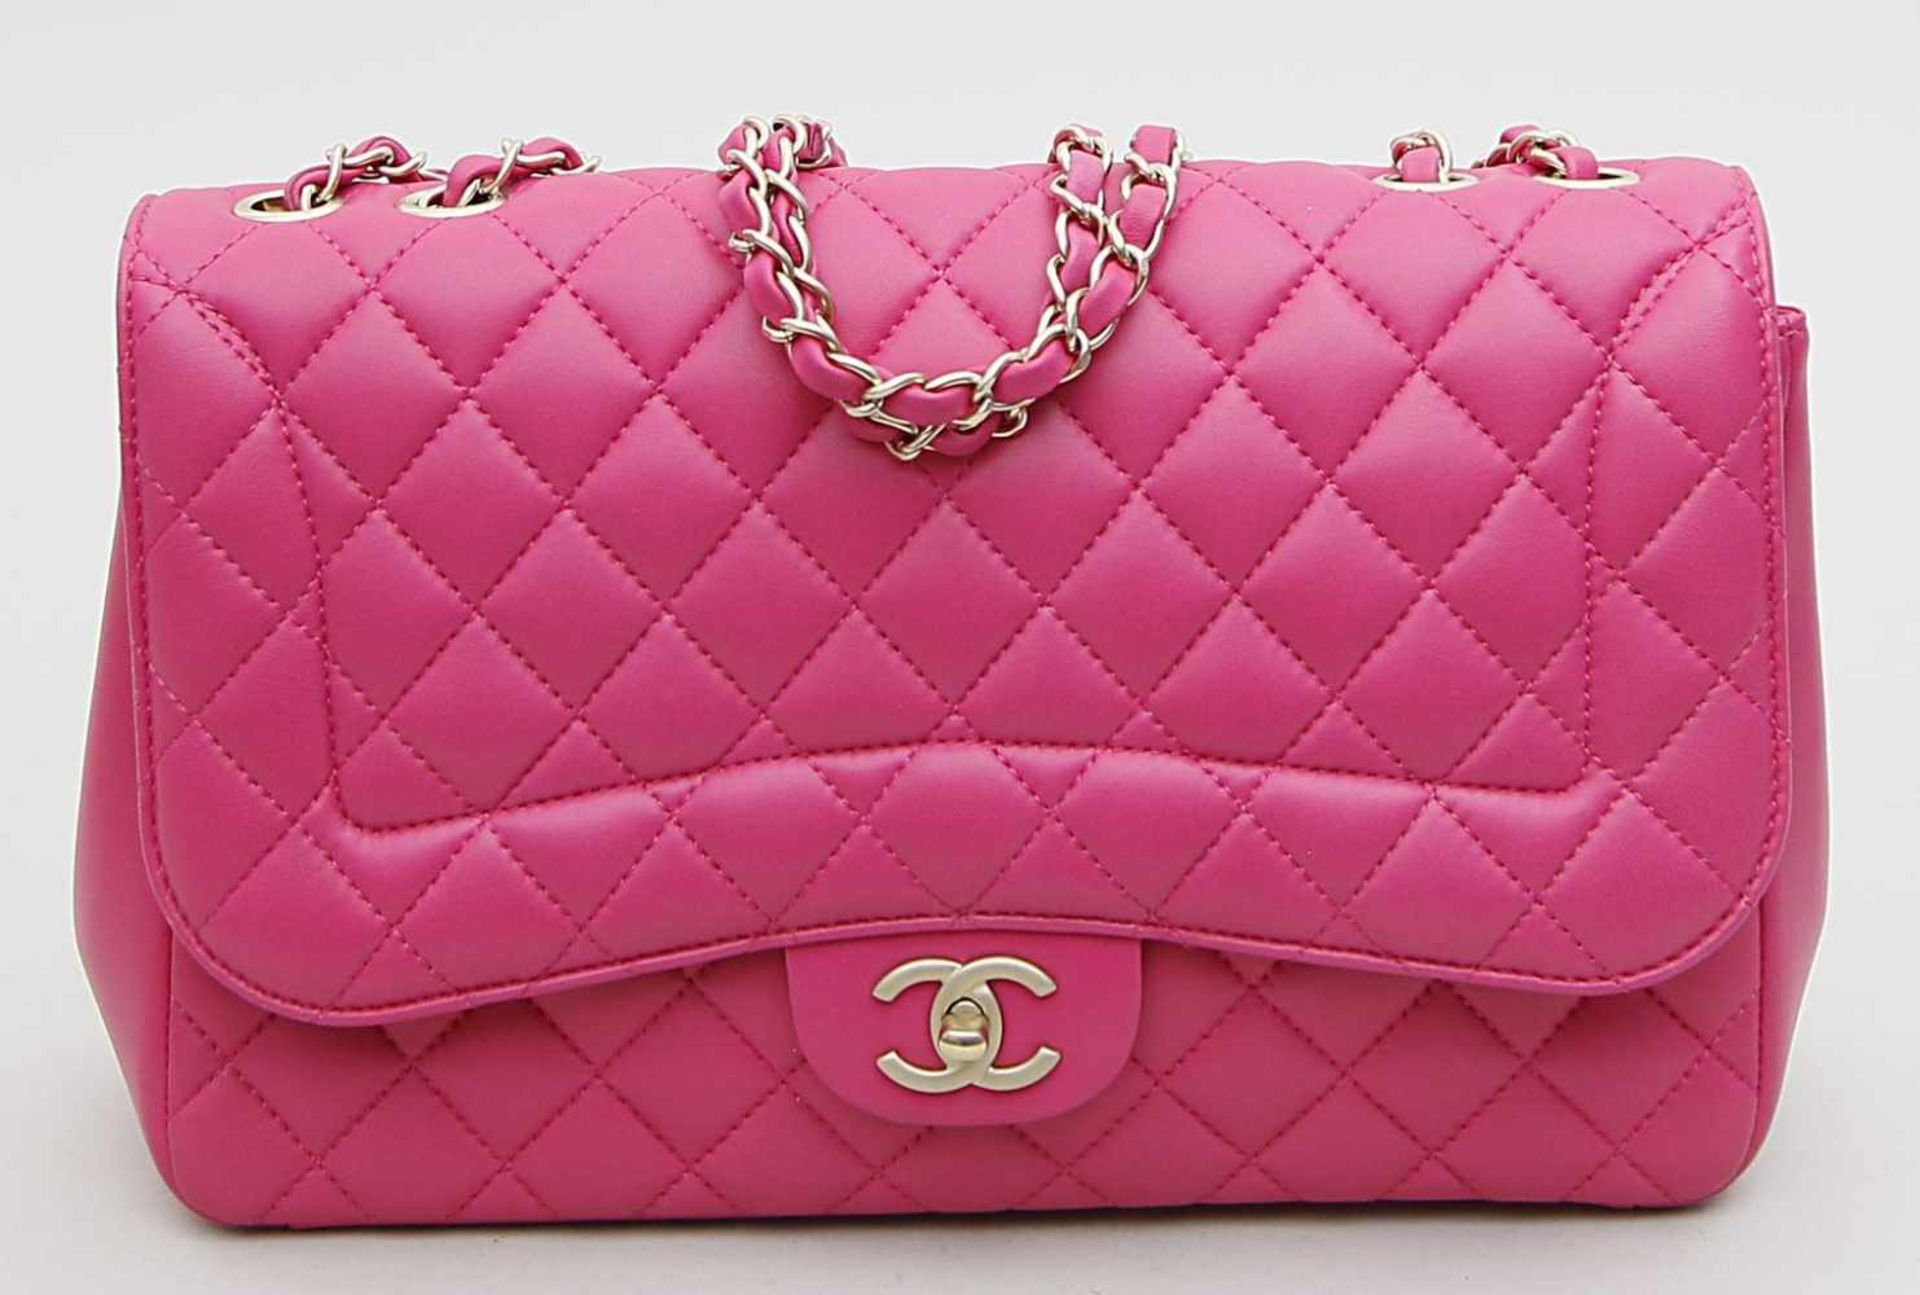 Handtasche, Chanel.Klassische Tasche mit Überschlag aus pinkem Leder. Lederdurchflochtener Riemen.